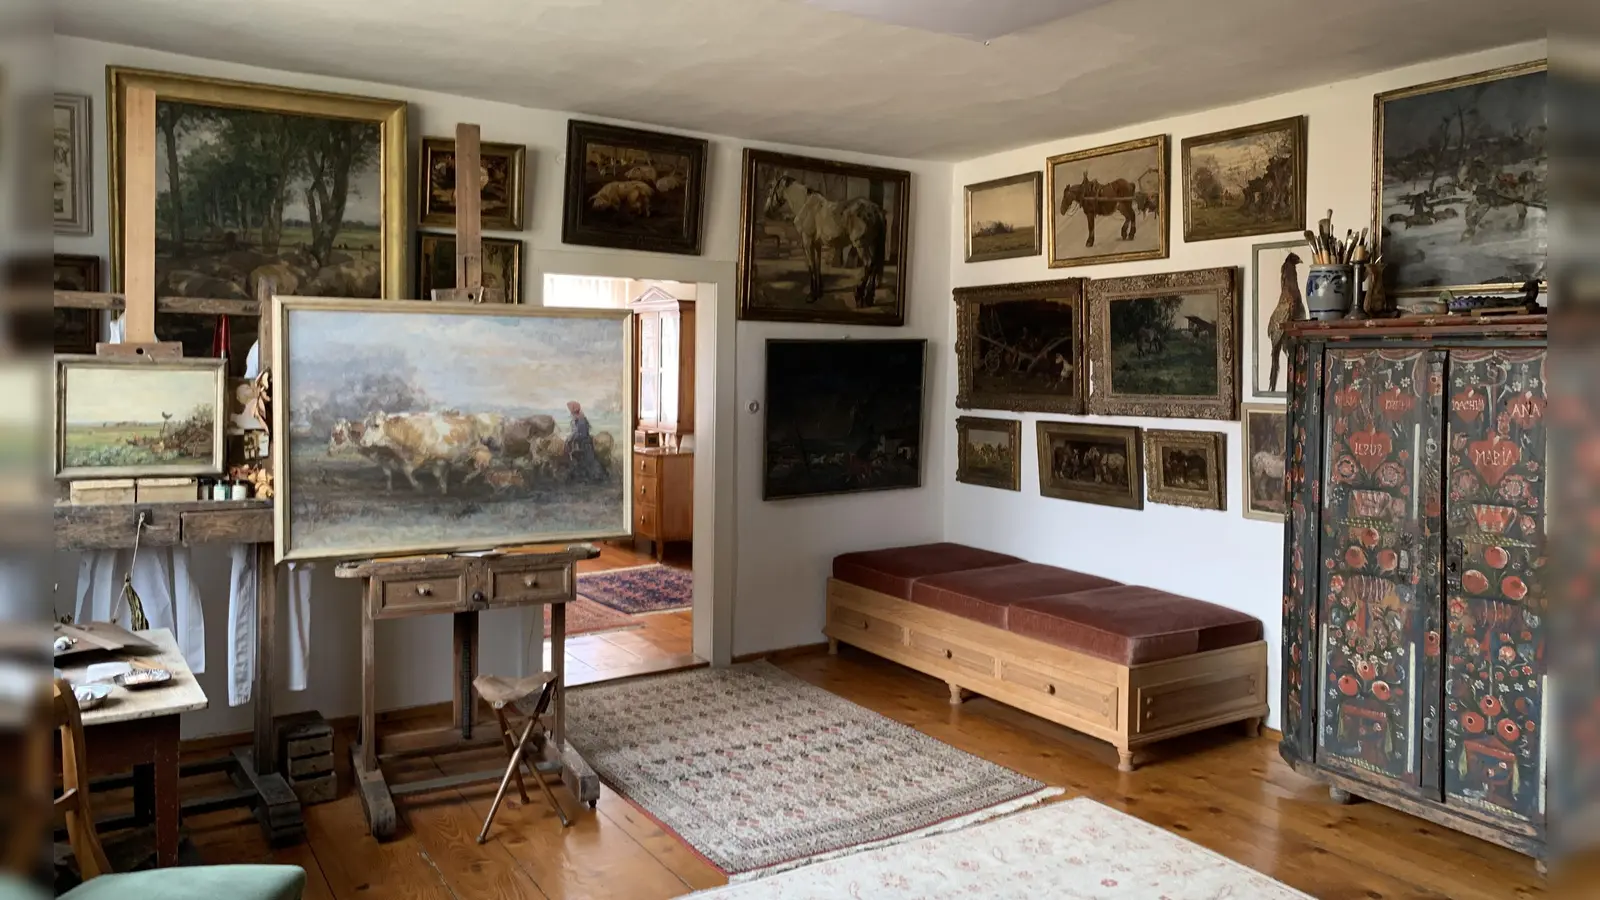 Viele Räume befinden sich noch im originalen Zustand und zeigen eine authentische Bürger- und Künstlerwohnung der Mitte des 20. Jahrhunderts. (Foto: Heike Schmidt-Kronseder)